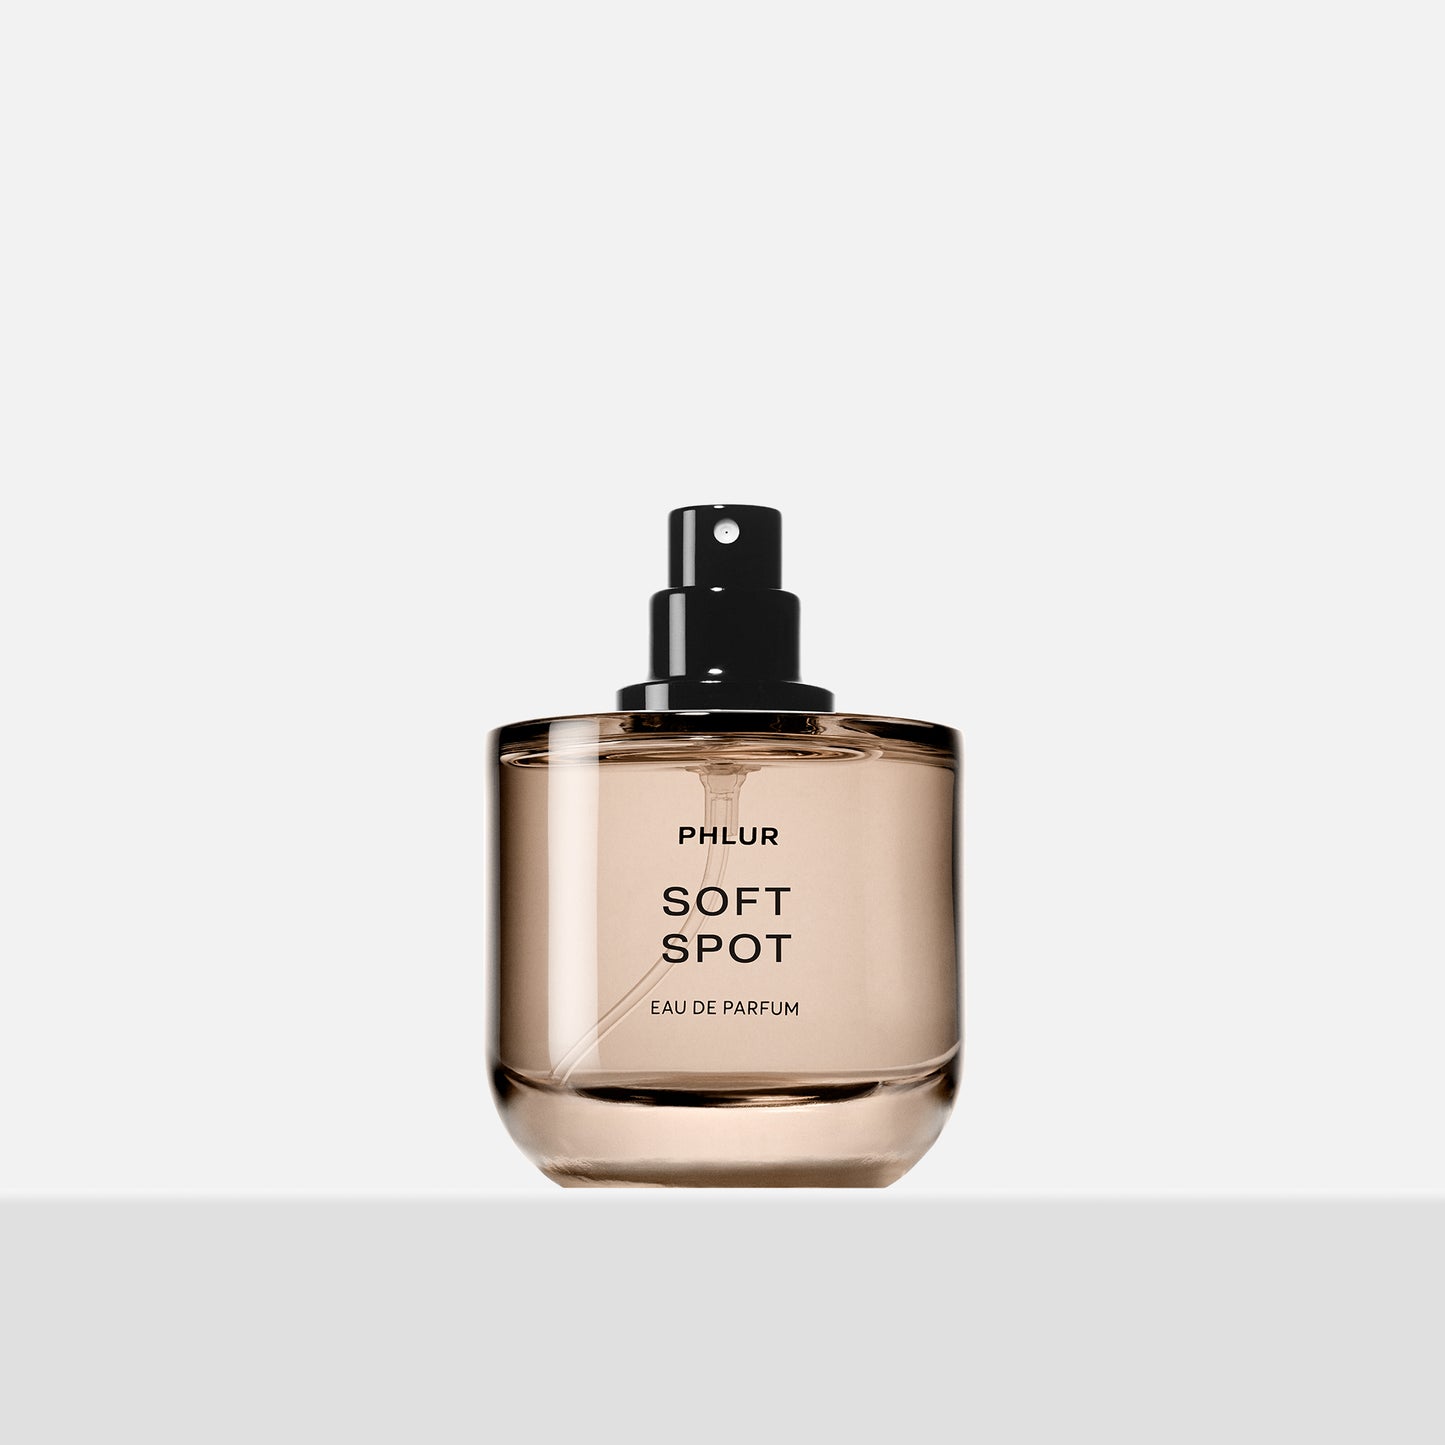 soft spot full sized fragrance